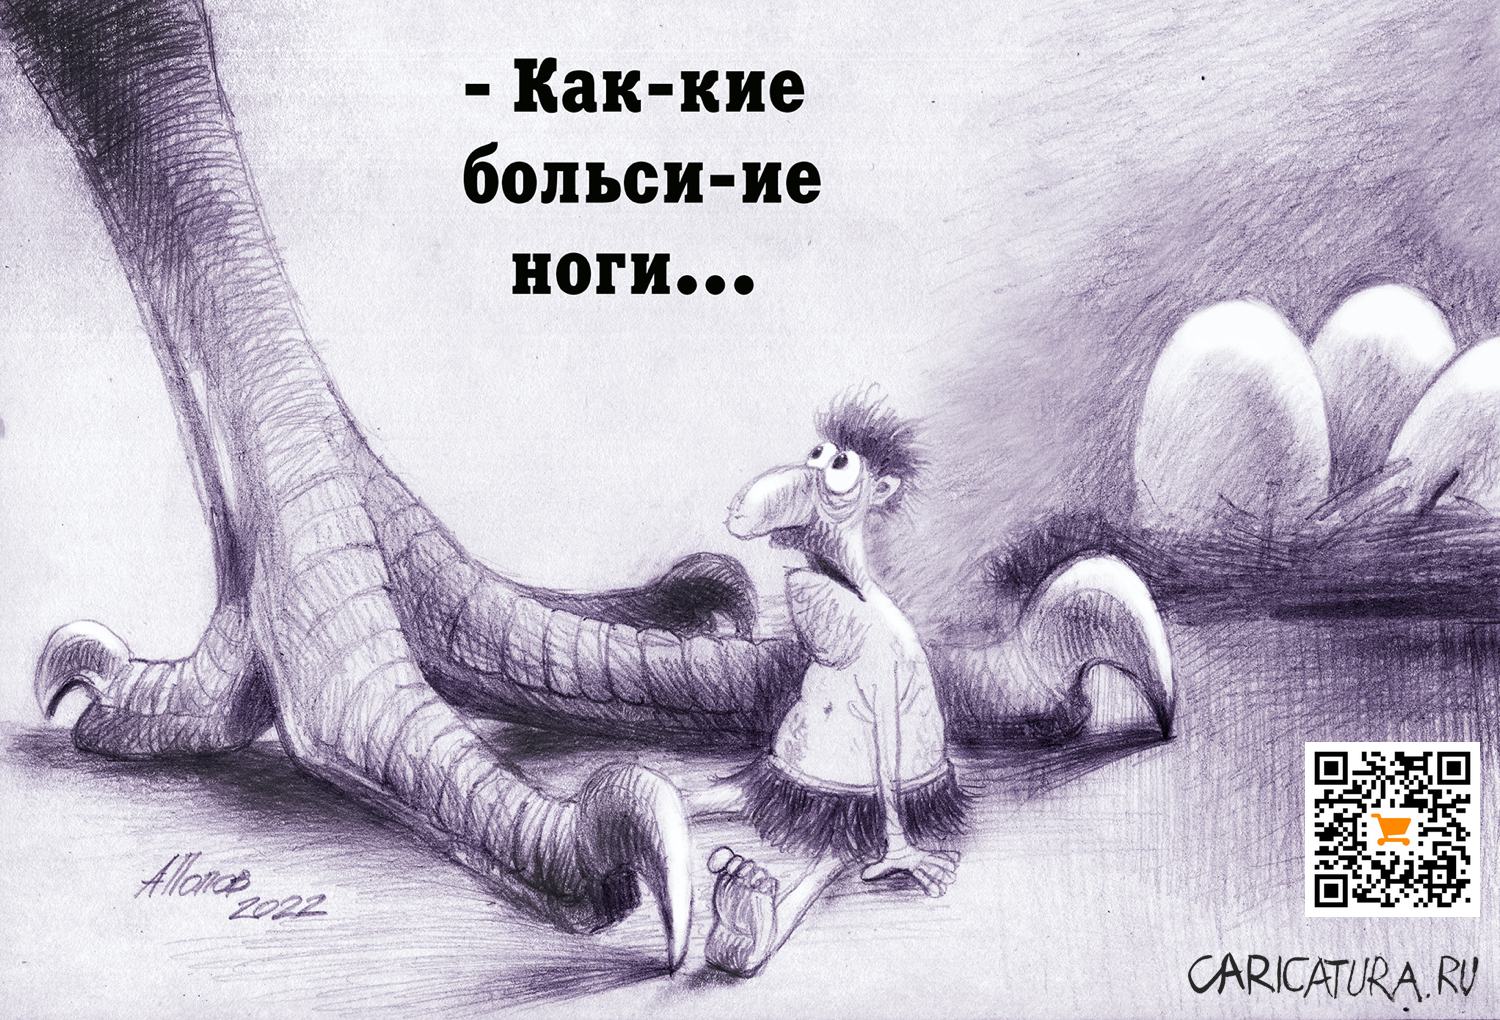 Карикатура "Впечатлительный", Александр Попов